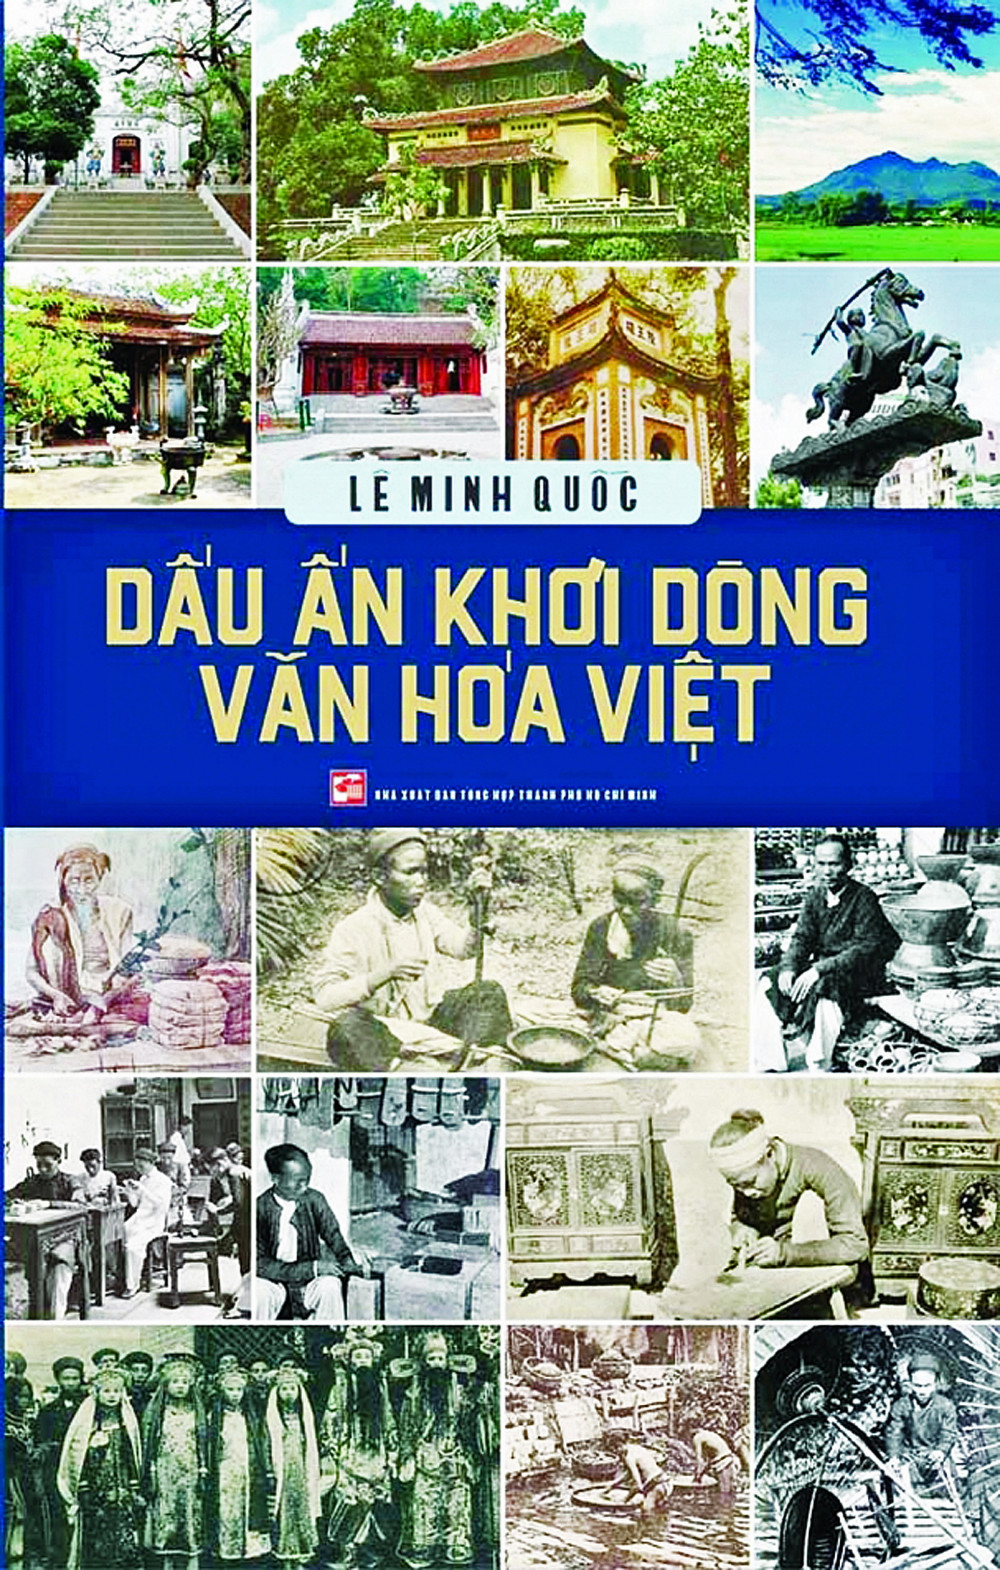 Dấu ấn khơi dòng văn hóa Việt đã hệ thống lại di sản danh nhân, văn hóa Việt của nhà báo Lê Minh Quốc